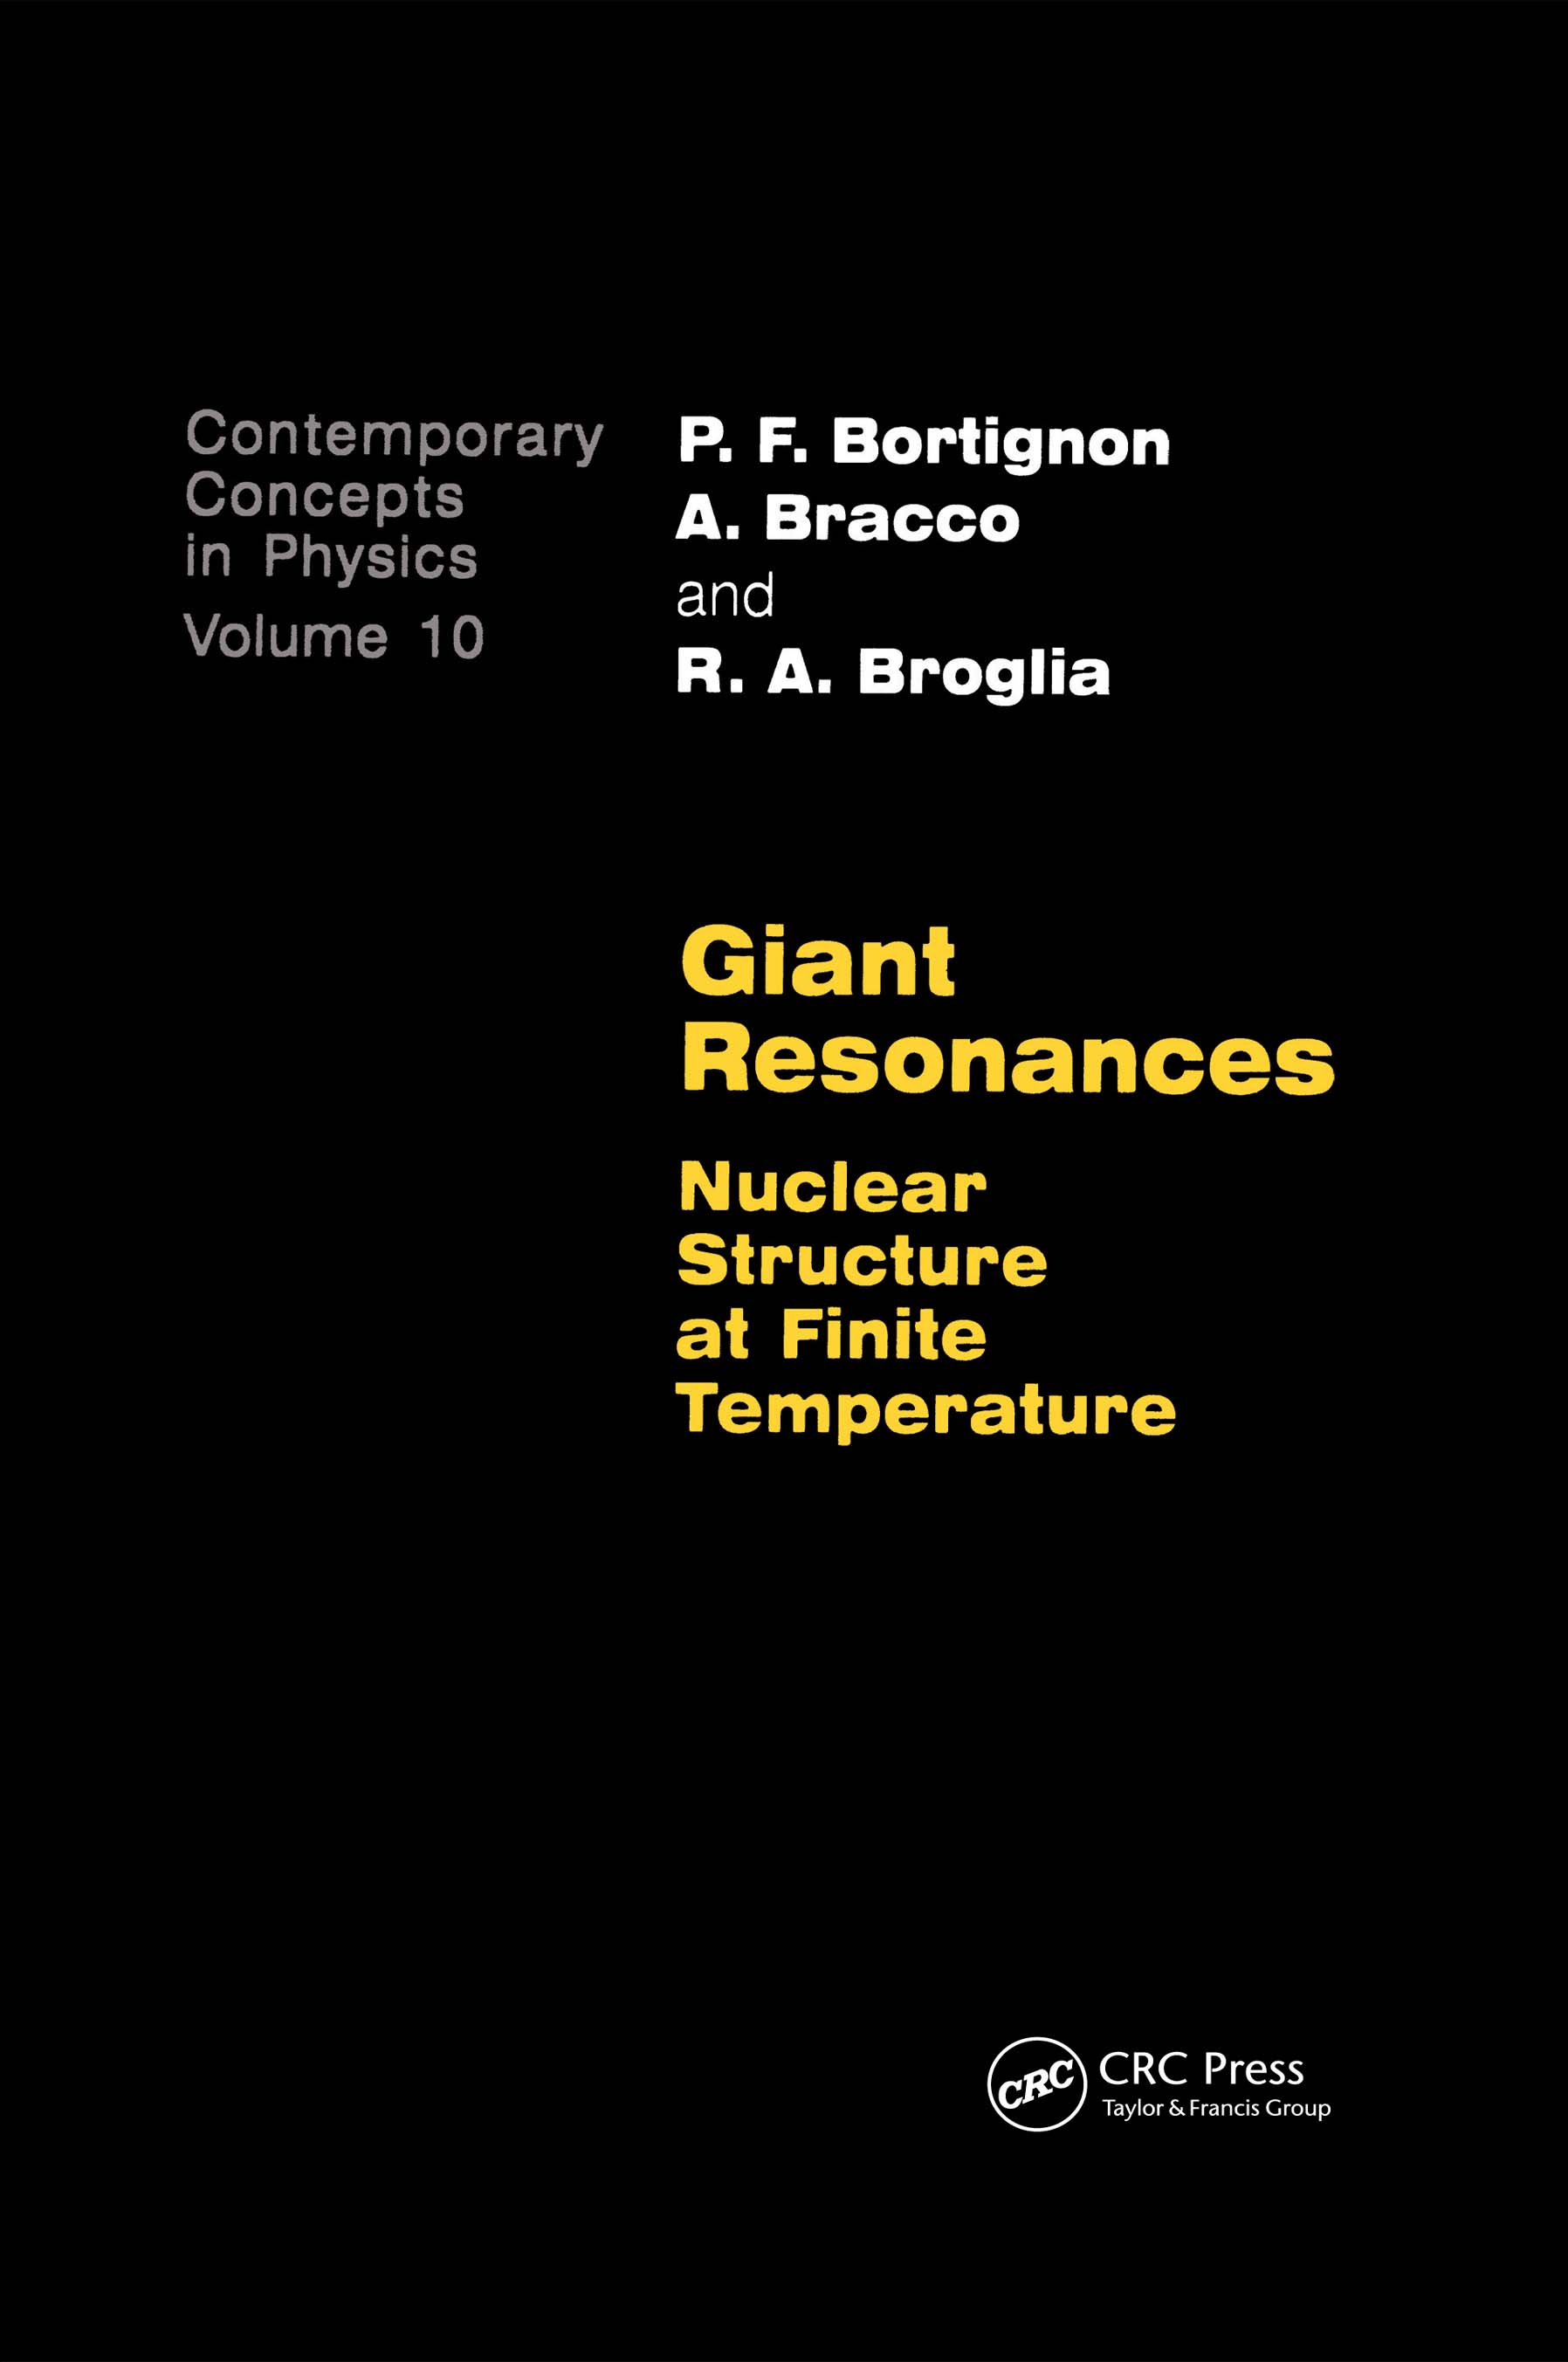 Giant Resonances - >100